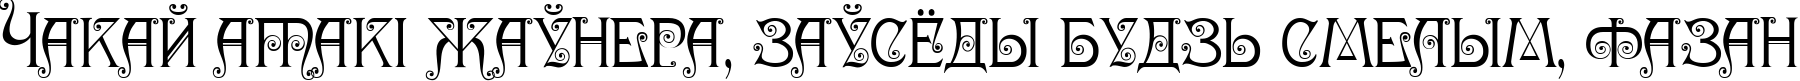 Пример написания шрифтом Nympha Two текста на белорусском